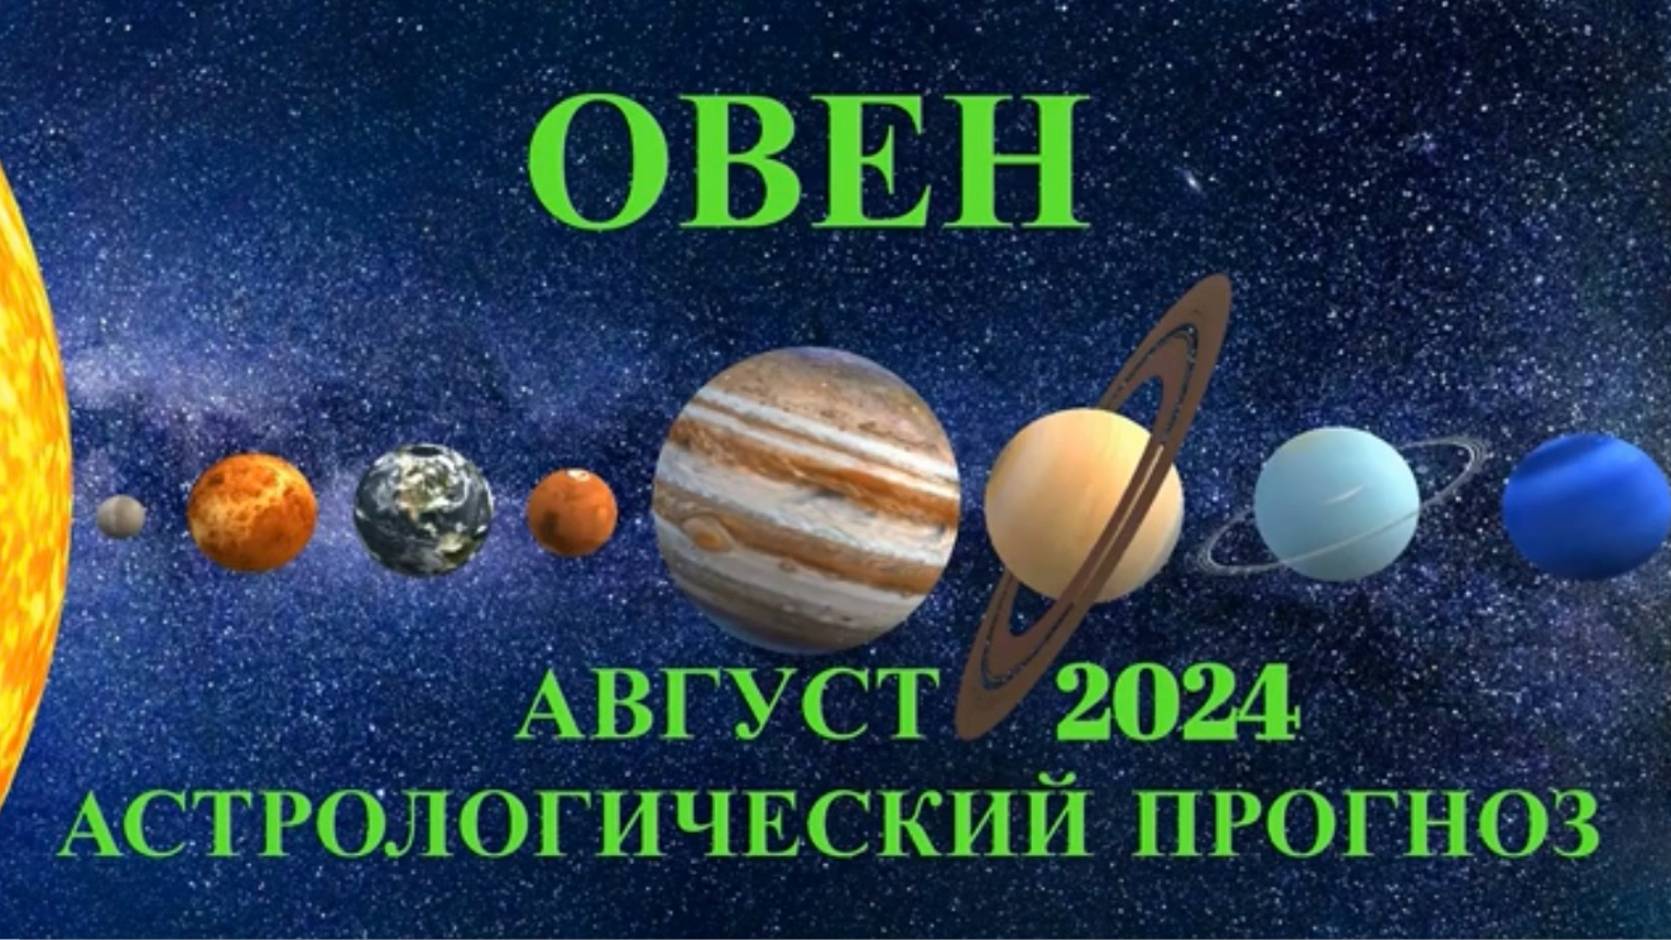 ОВЕН: "АСТРОЛОГИЧЕСКИЙ ПРОГНОЗ на АВГУСТ-2024!!!"